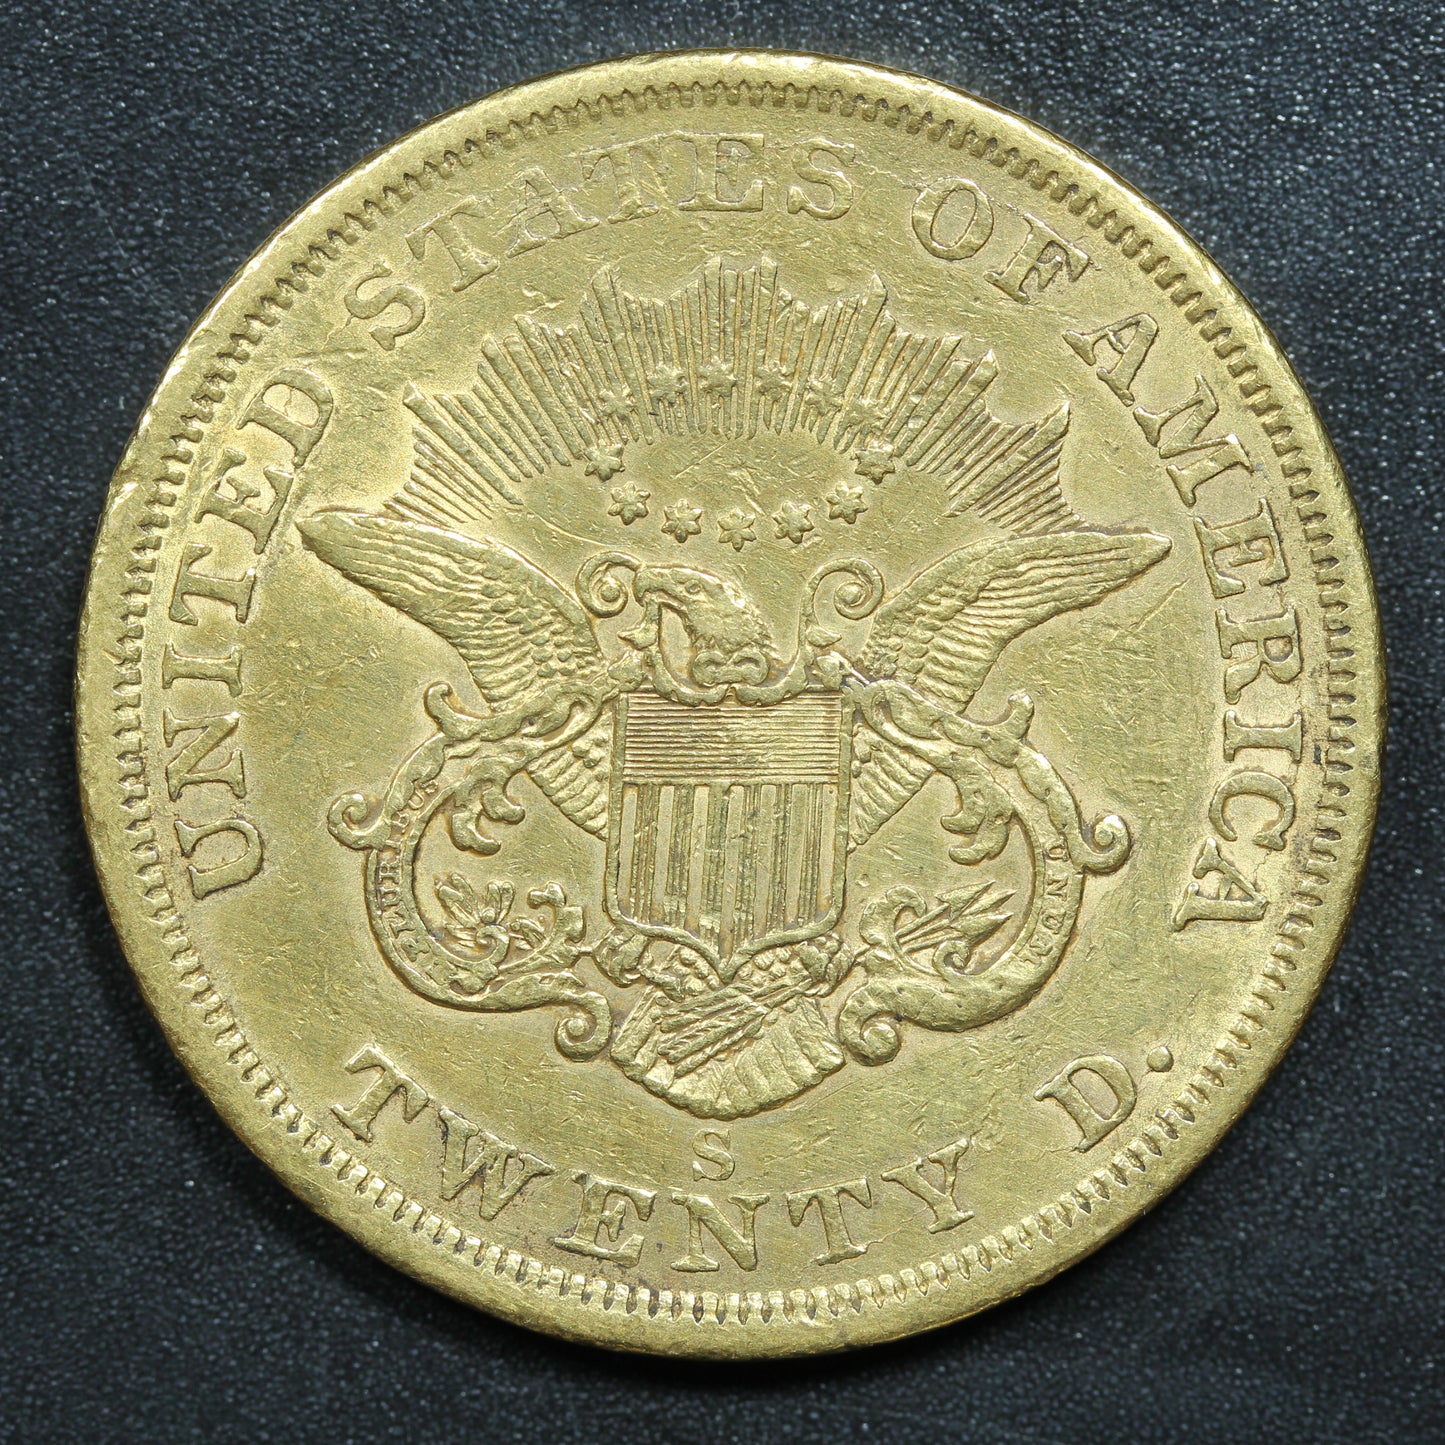 1861 S (San Francisco) $20 Gold Liberty Head Double Eagle Coin